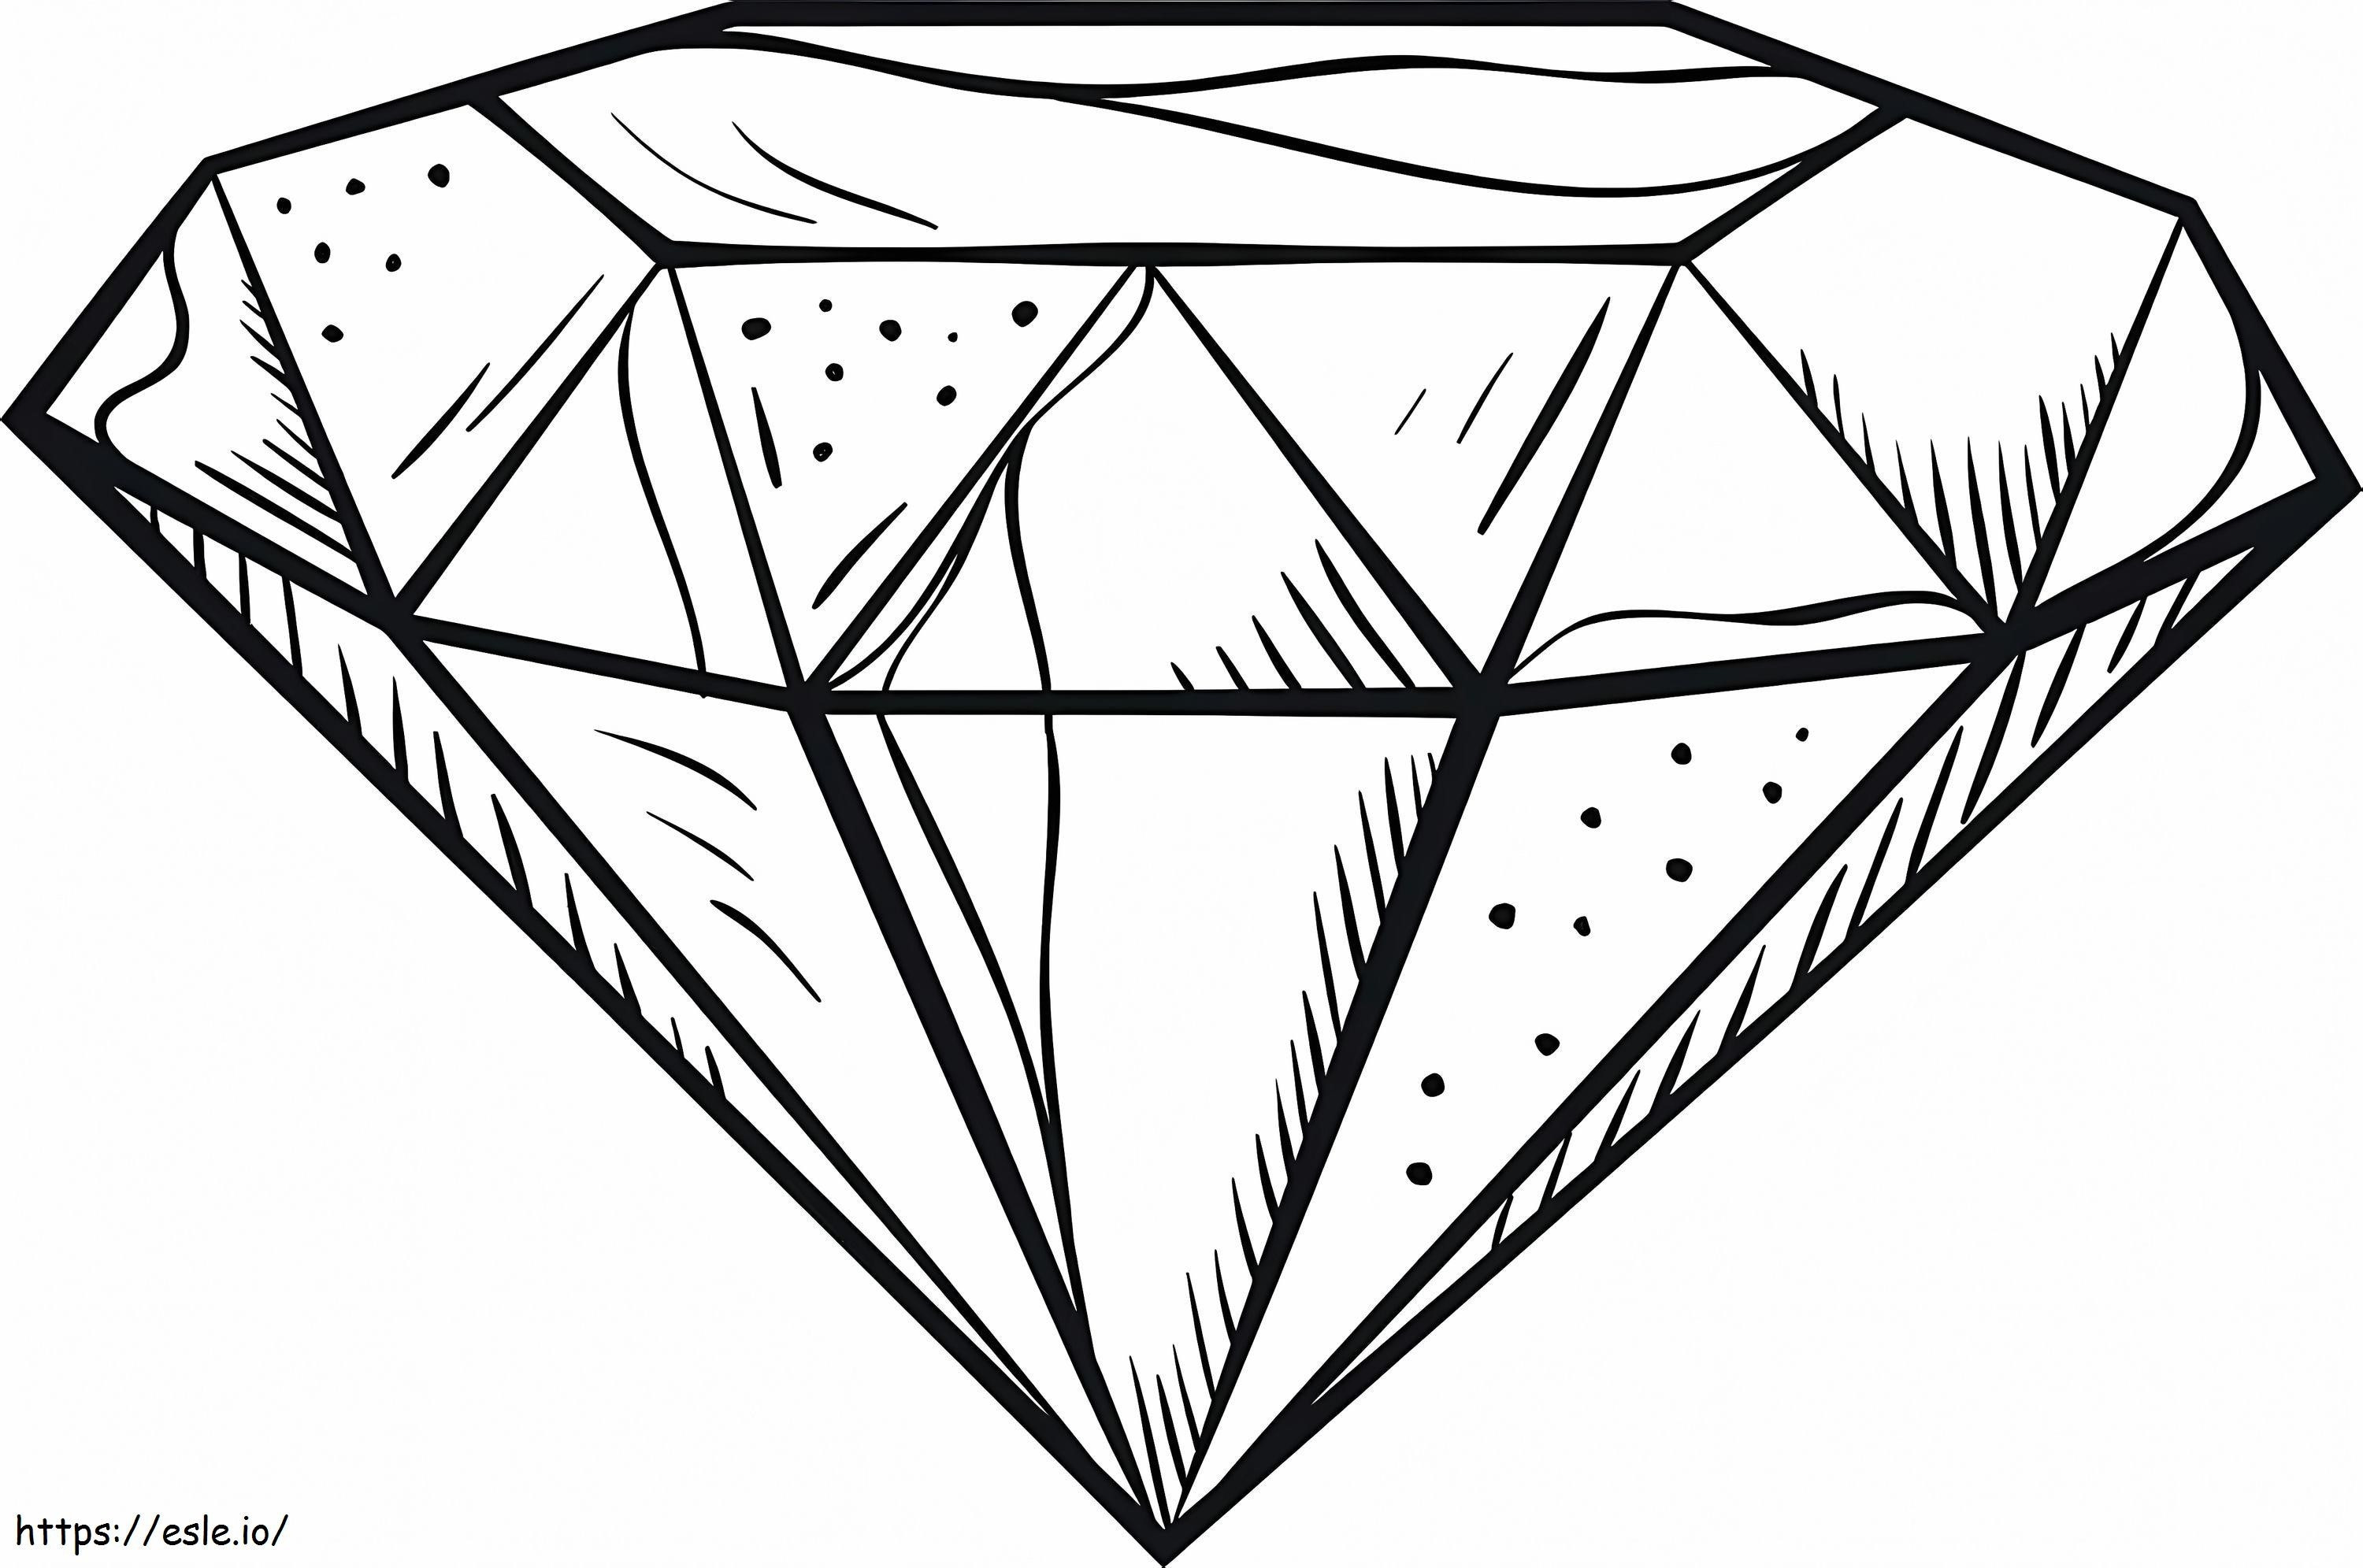 Diamant für Kinder ausmalbilder